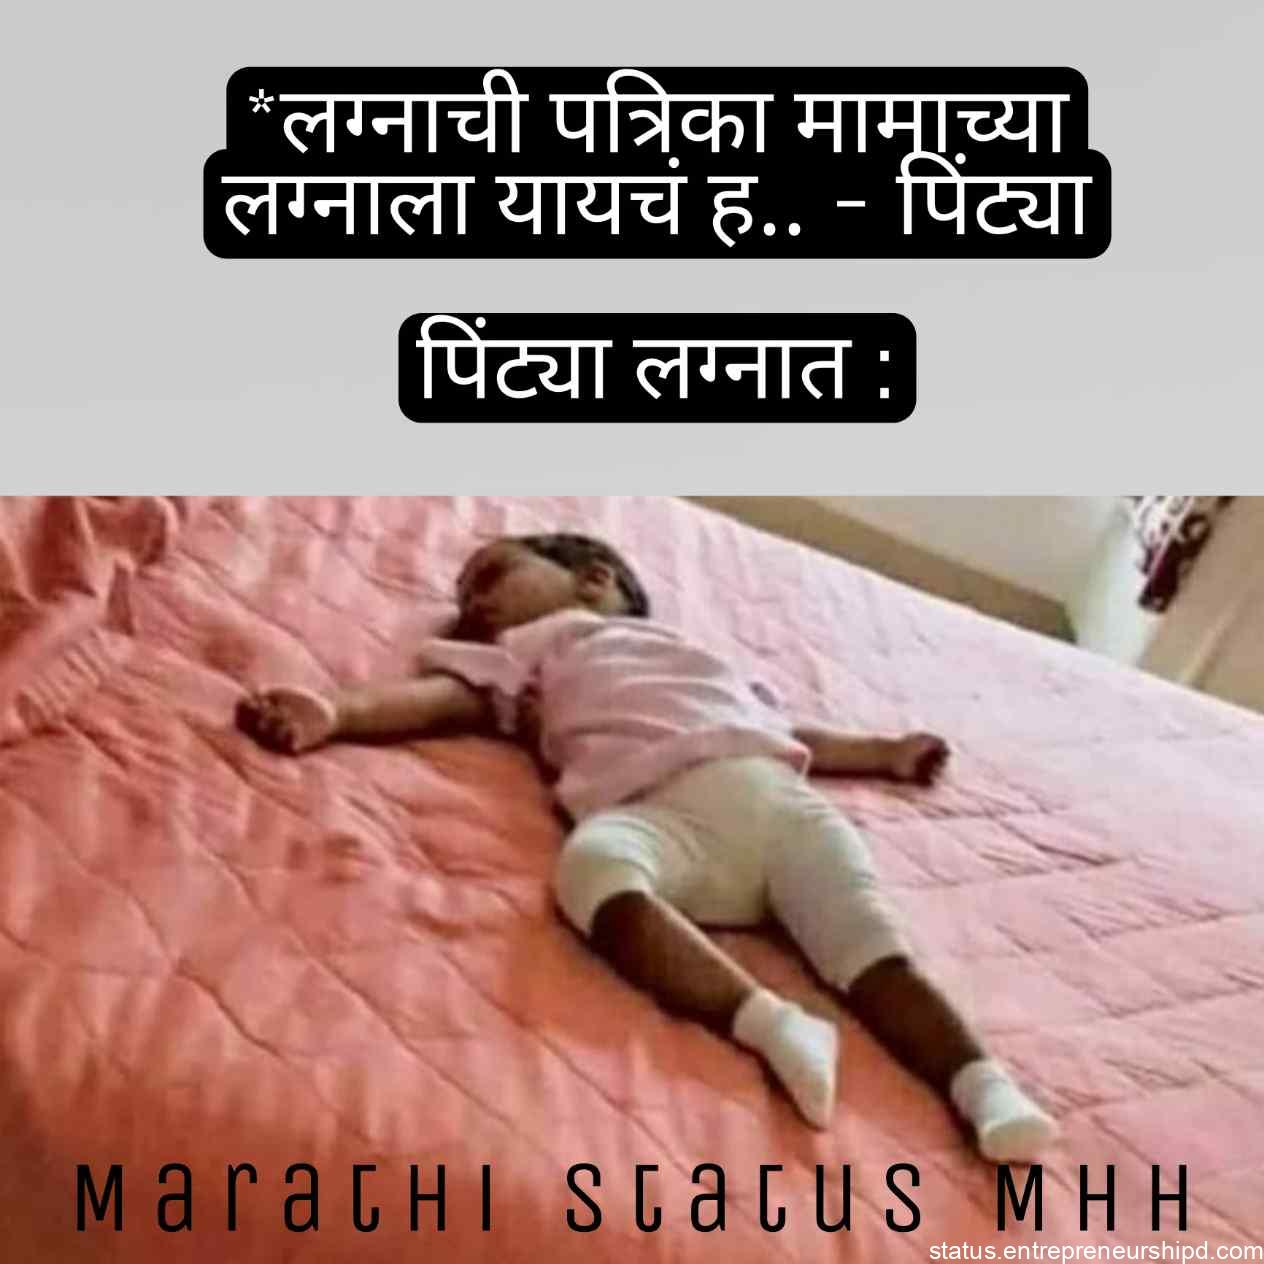 Marriage Marathi memes